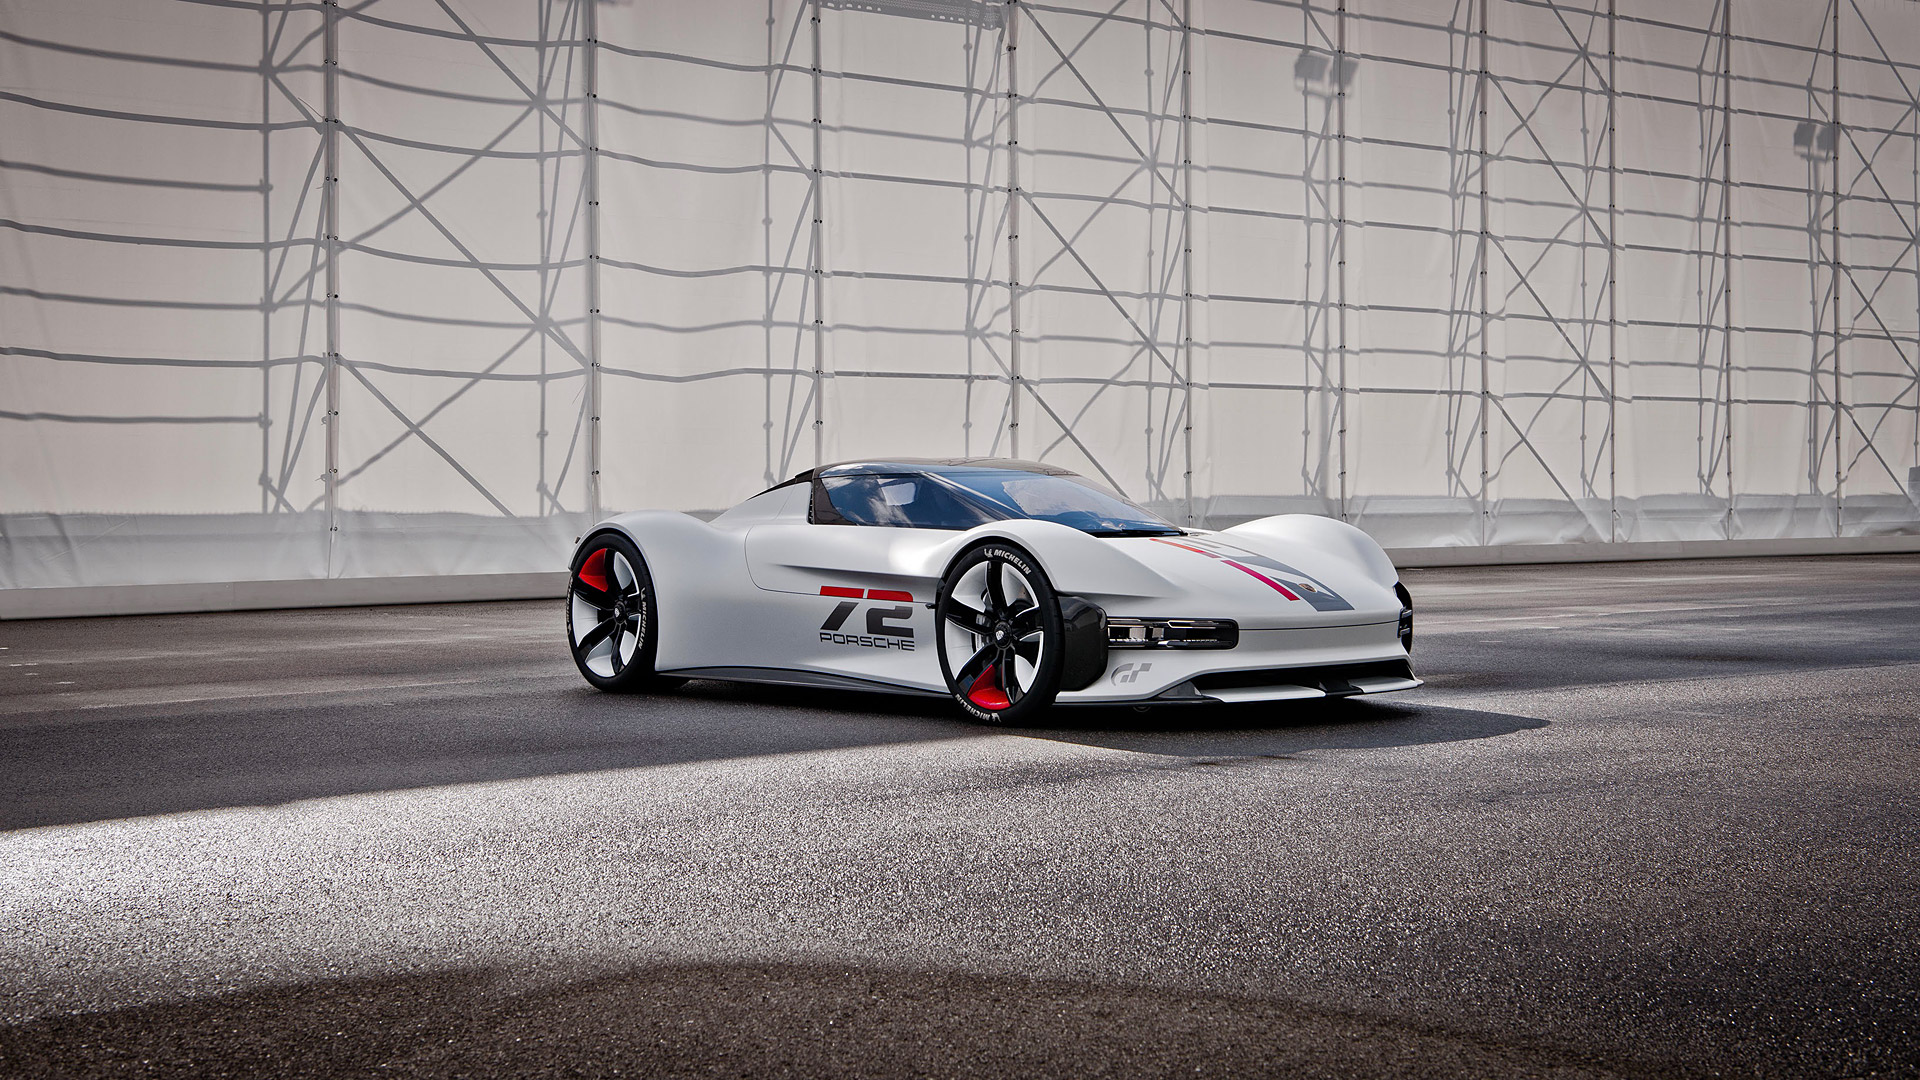  2021 Porsche Vision Gran Turismo Concept Wallpaper.